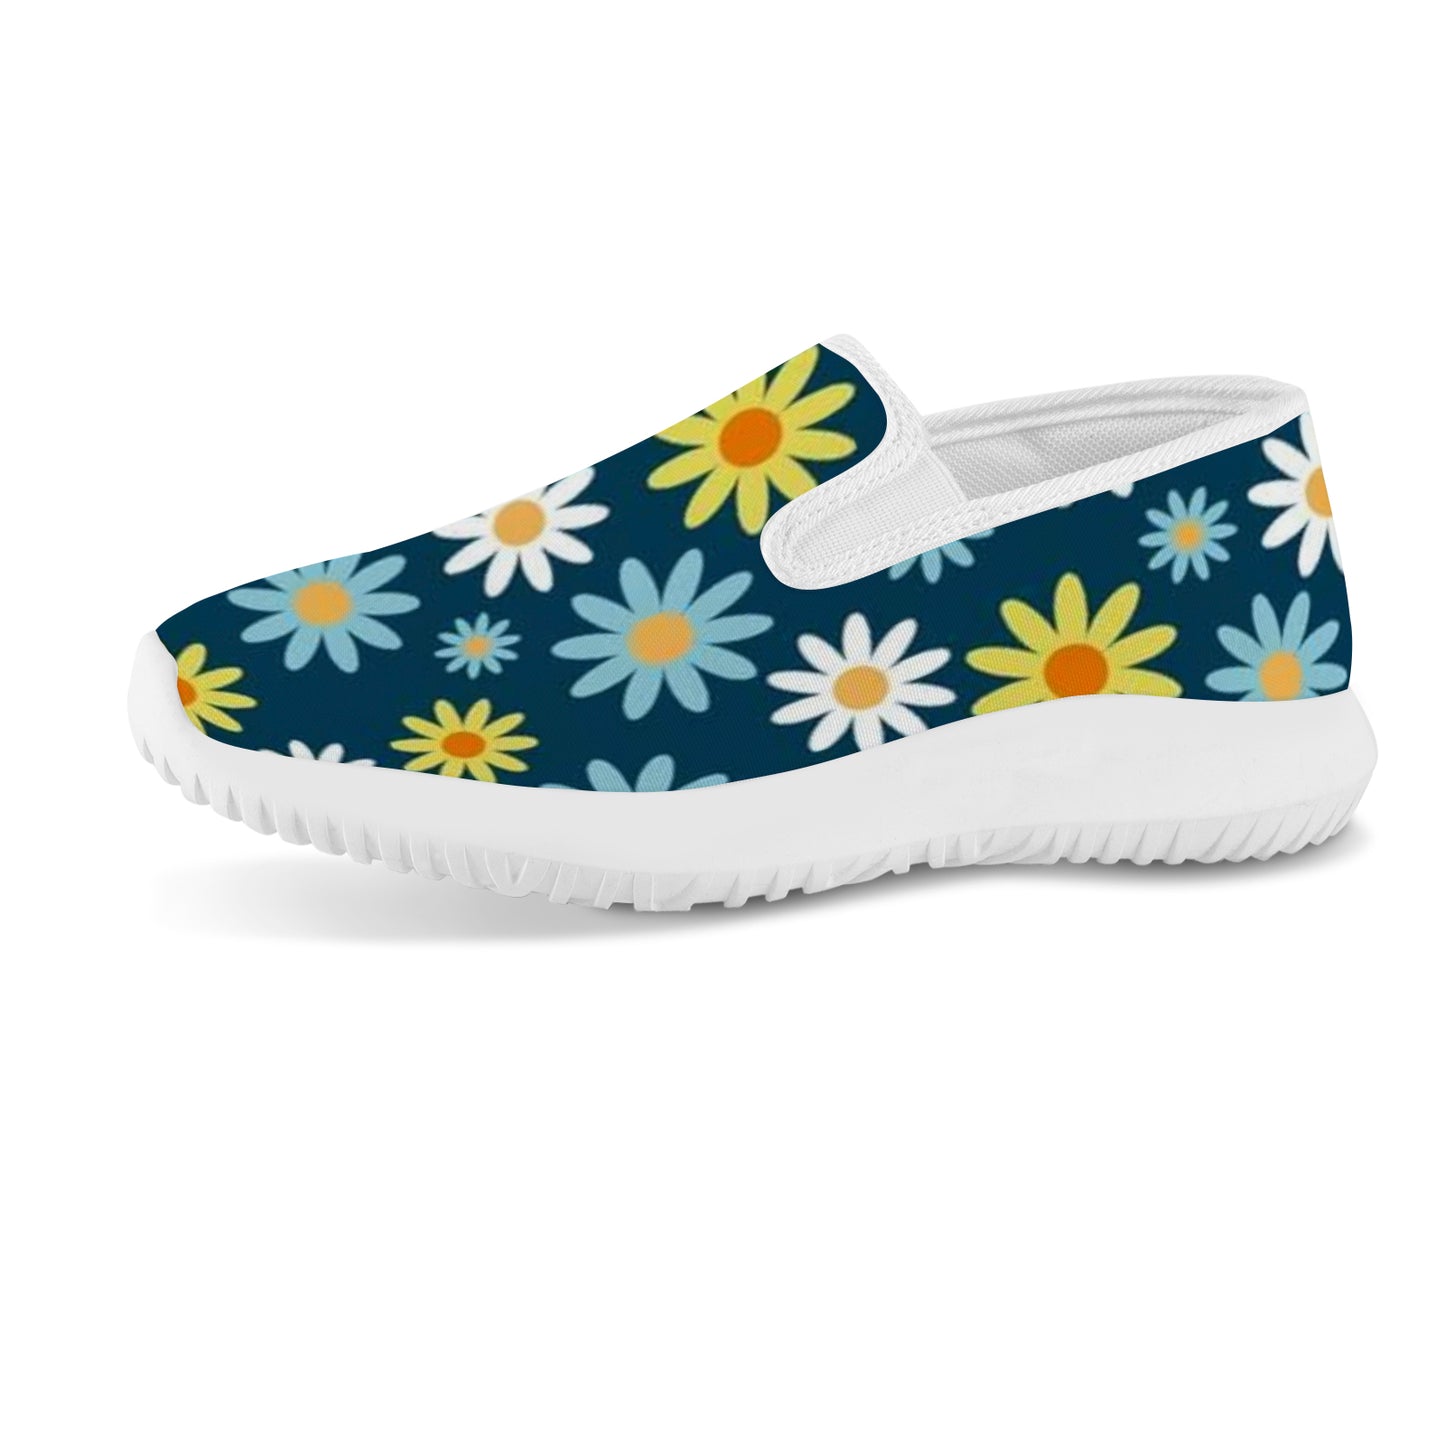 Women's Slip-on Sneakers - Daisy